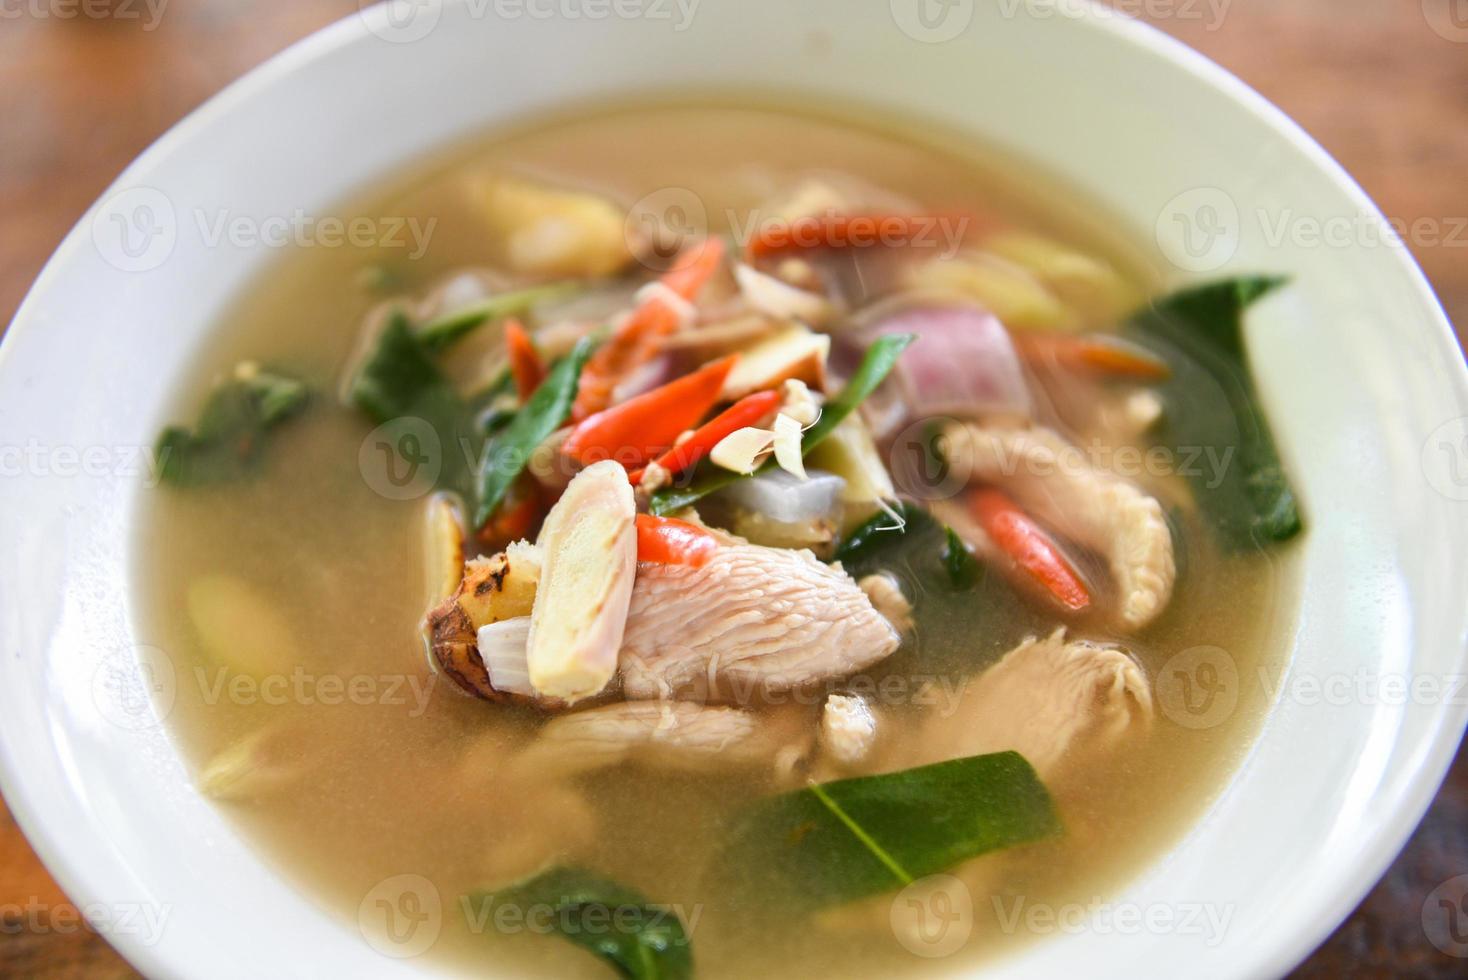 würzige Hühnersuppe - Chicken Tom Yum würziges thailändisches Essen auf weißer Schüssel foto